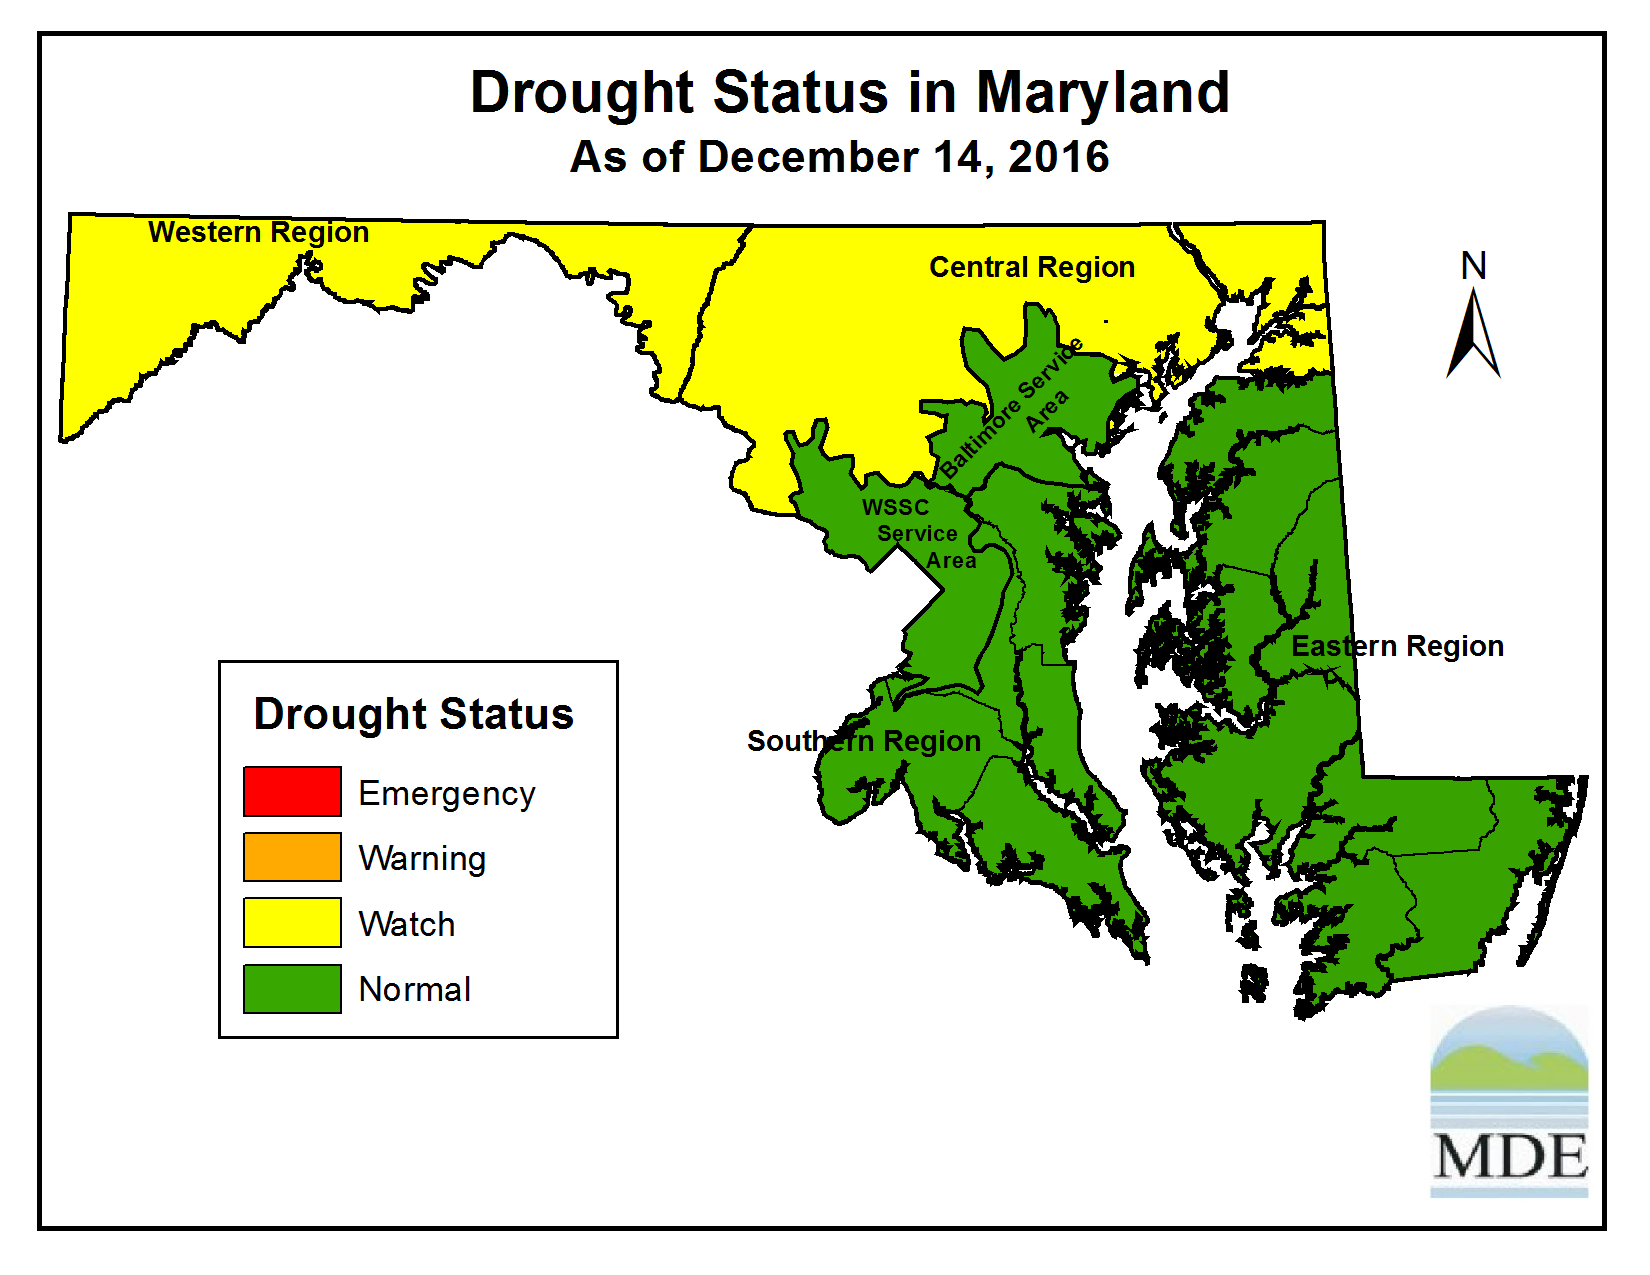 Drought Status as of Decenber 14, 2016